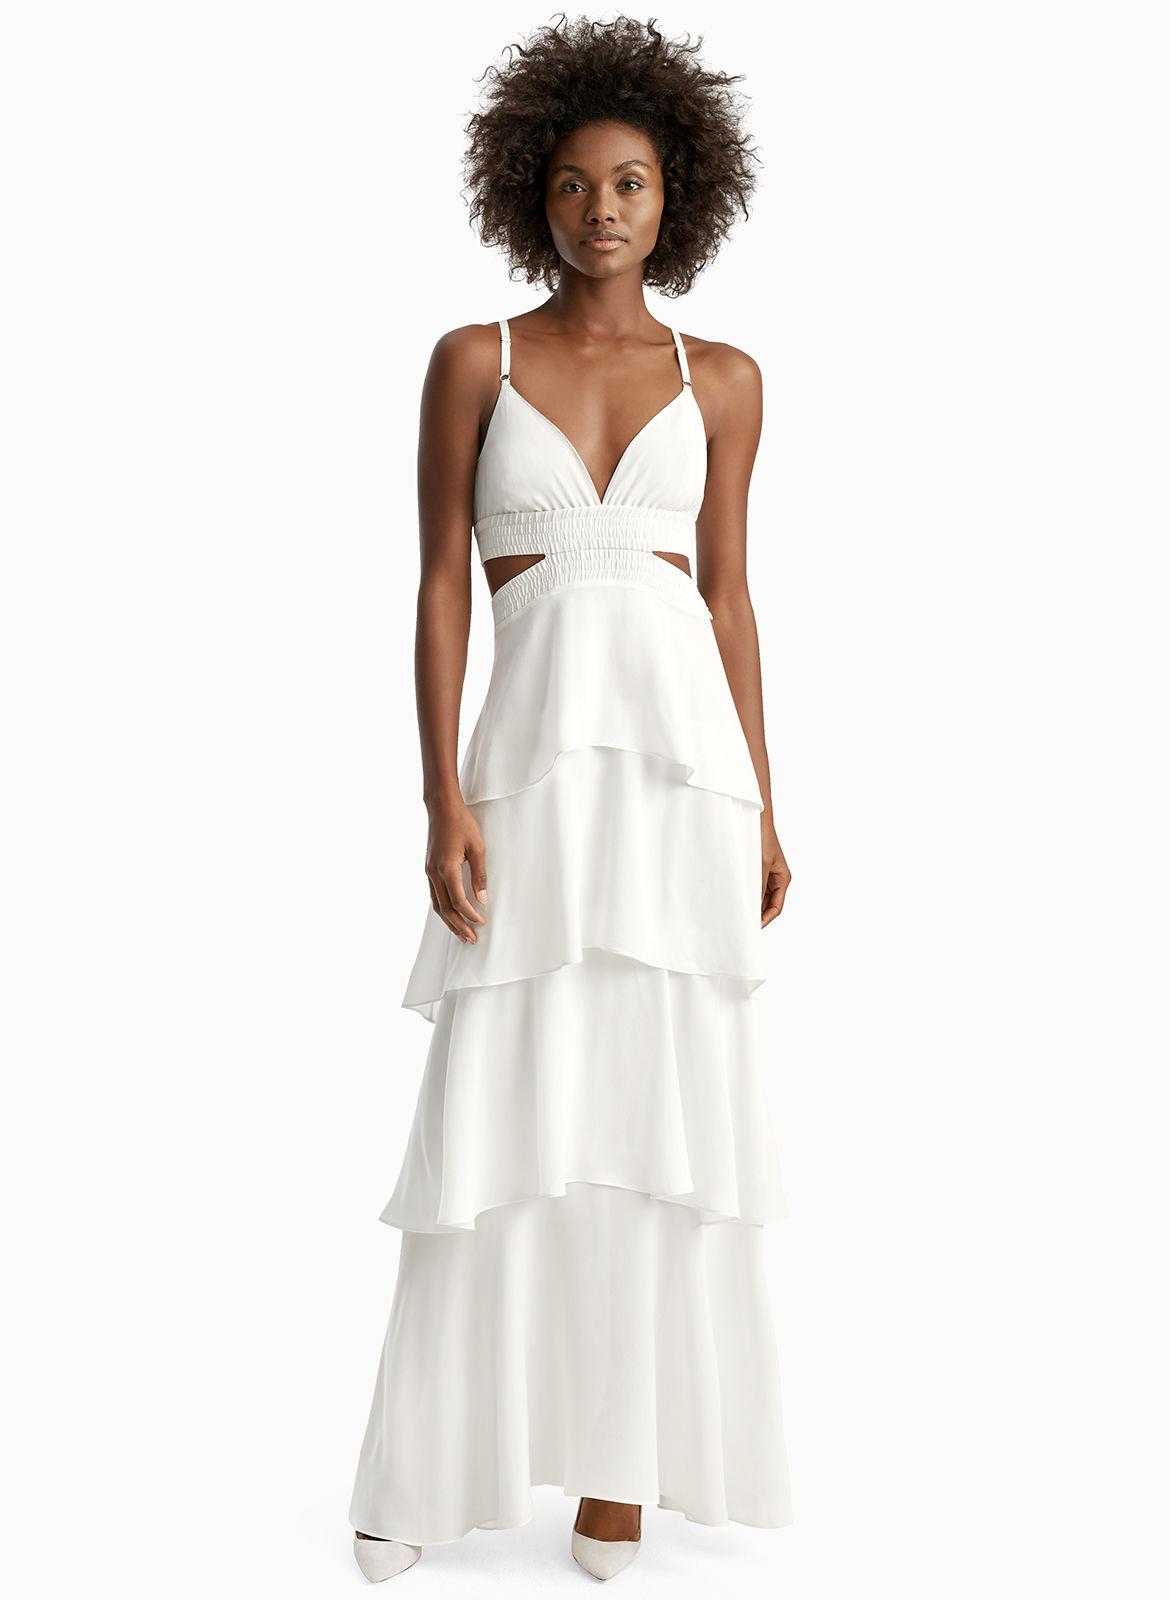 alc white dress